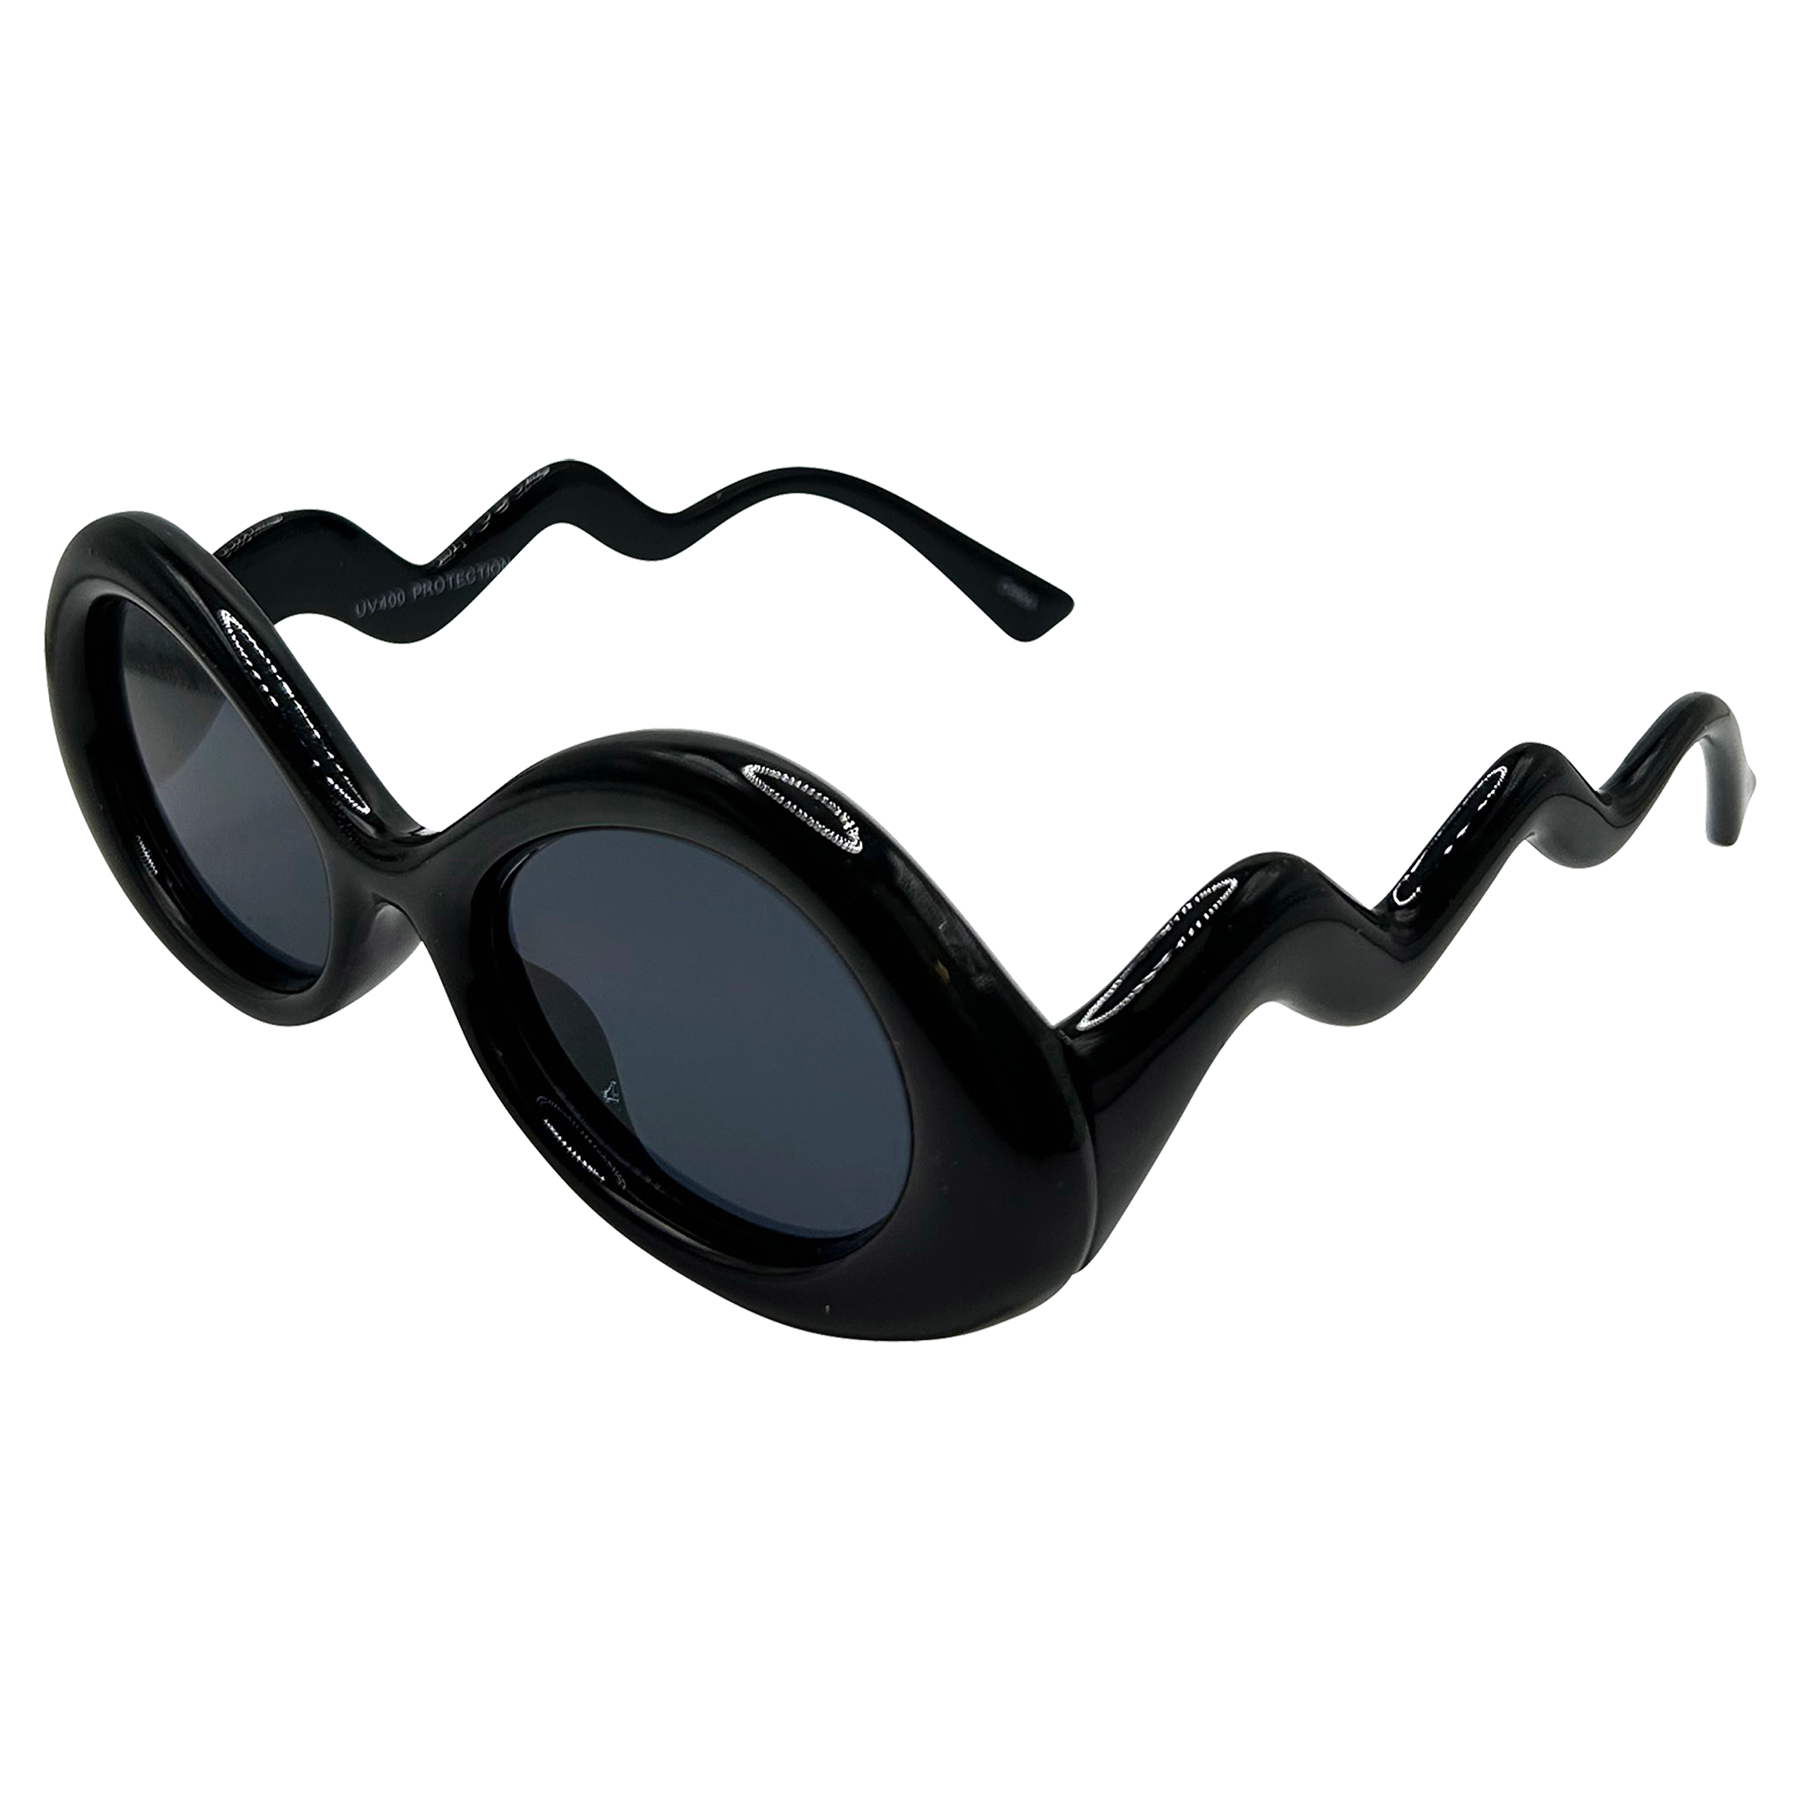 WOBBLE 90s Rave Sunglasses